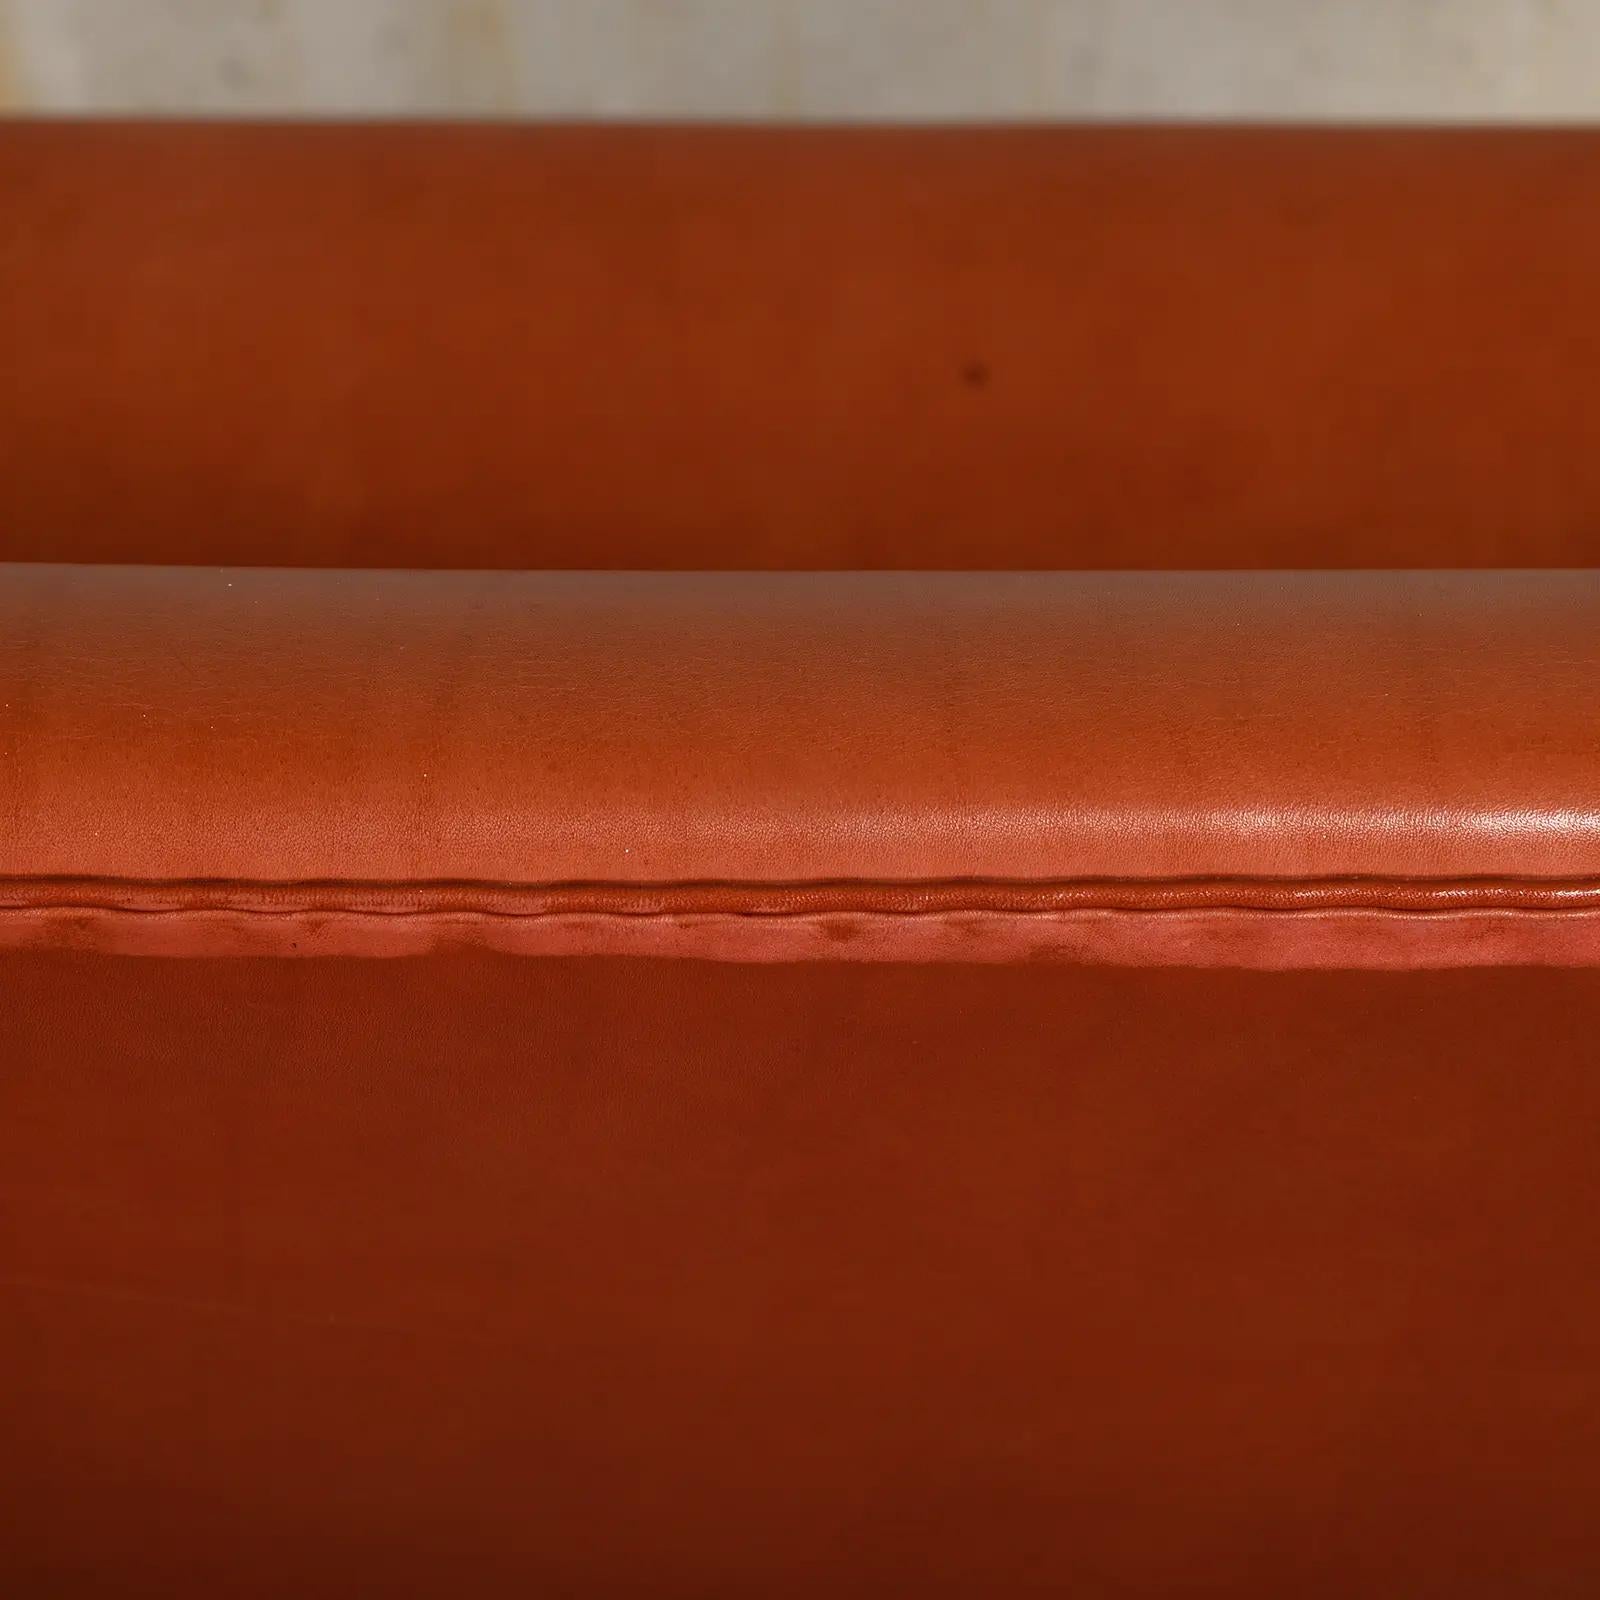 Arne Jacobsen Swan Sofa in Grace Walnut Leather for Fritz Hansen, Denmark 1958 For Sale 12